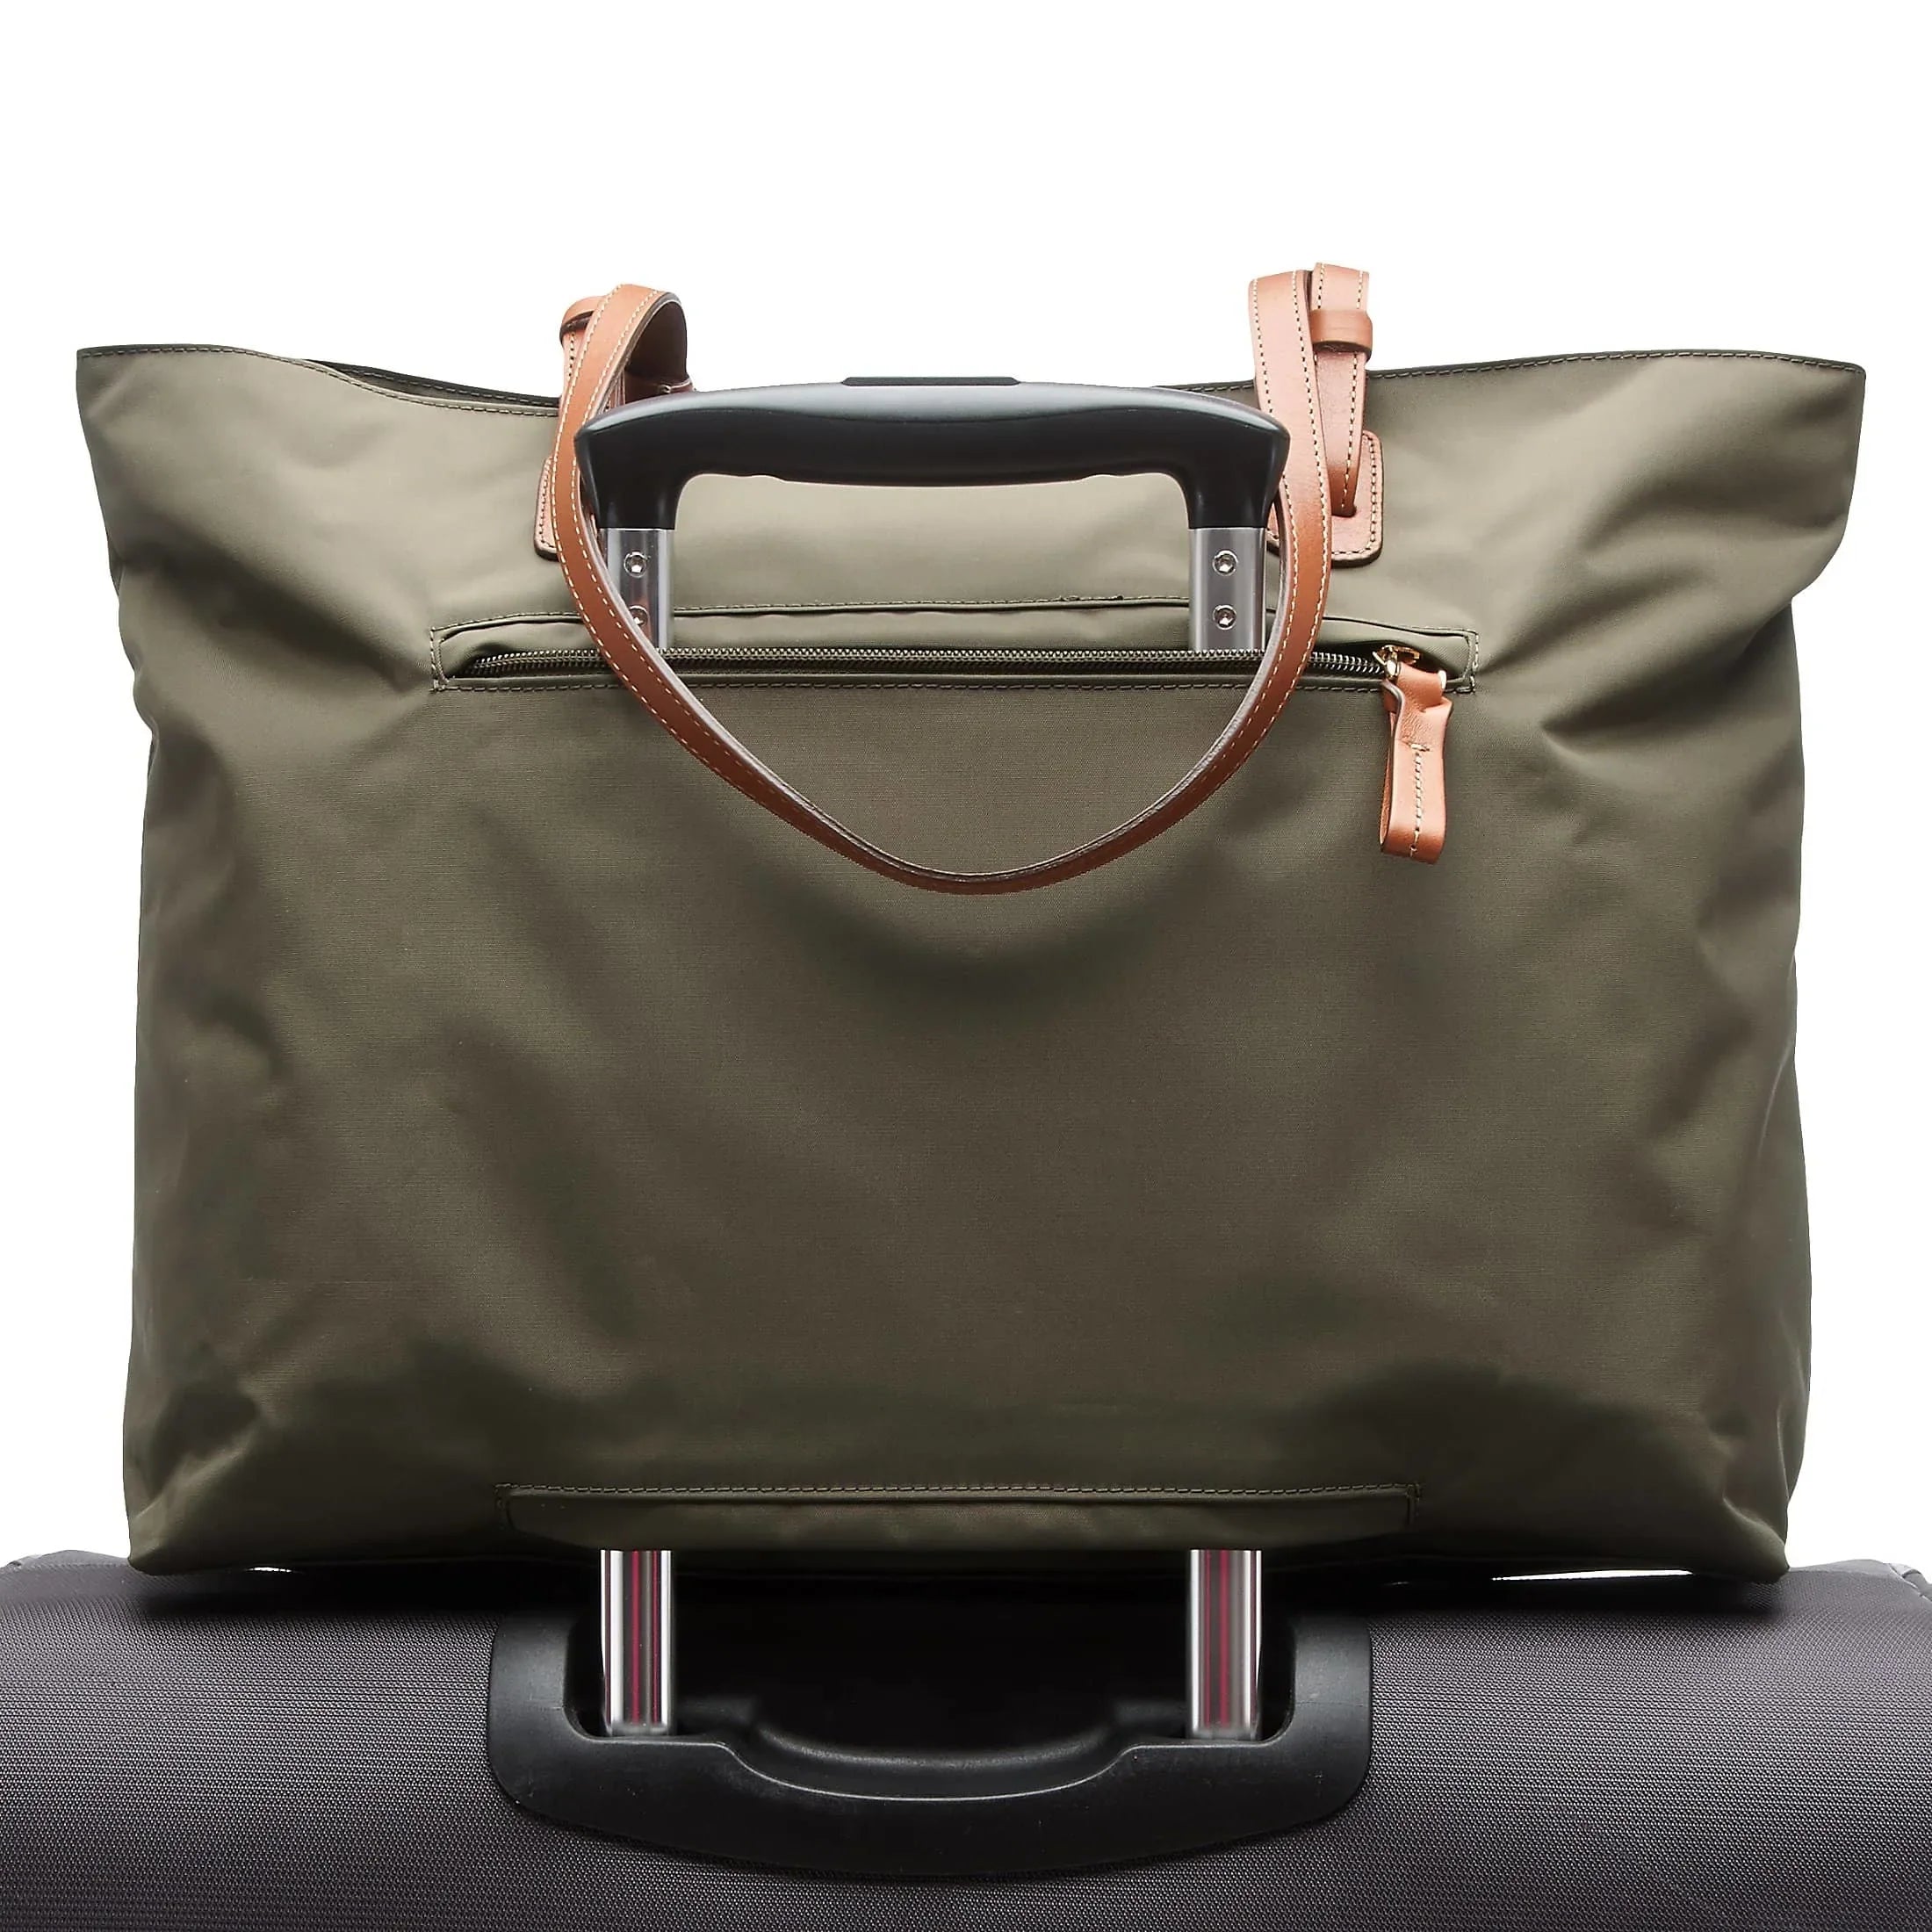 Brics X-Travel handbag 38 cm - olive